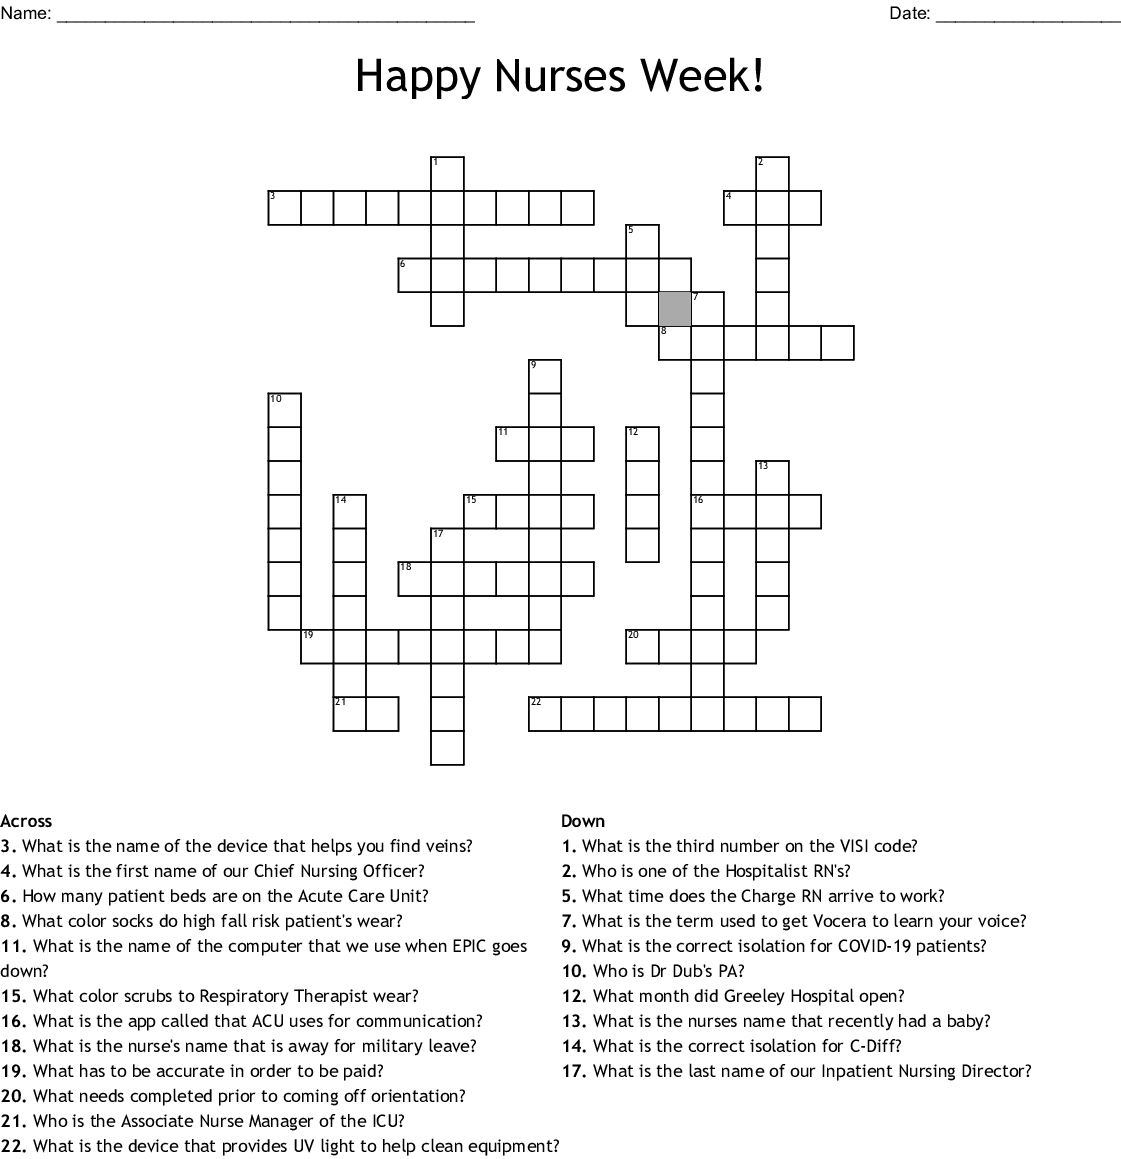 Happy Nurses Week Crossword WordMint